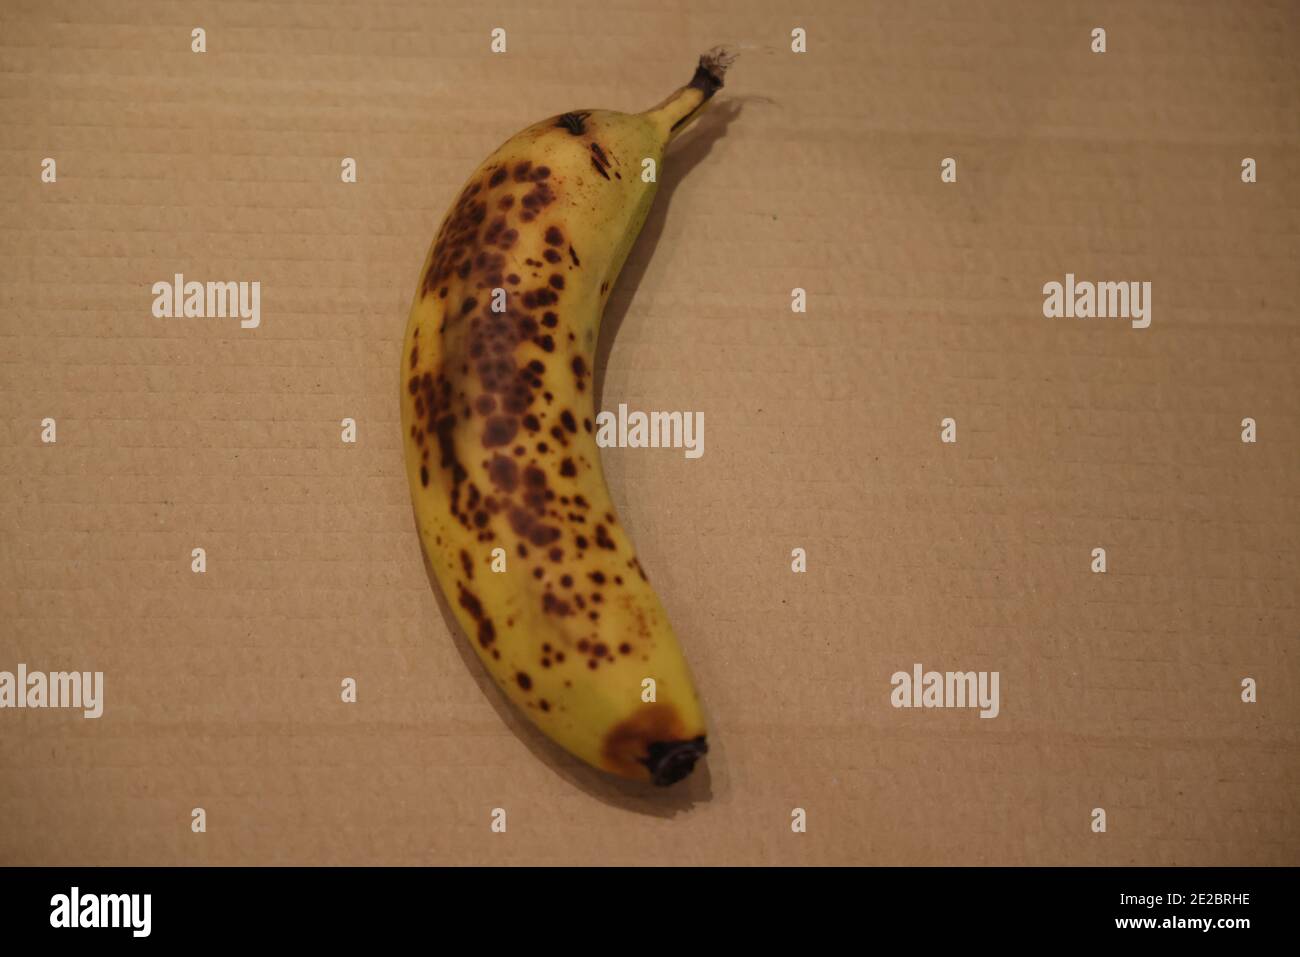 Dimostrazione: La radiazione ultravioletta (UVA) dalla luce nera causa la fluorescenza della banana matura; indicazione di maturazione; confronta la stessa banana inUV in 2E2BRH6 Foto Stock